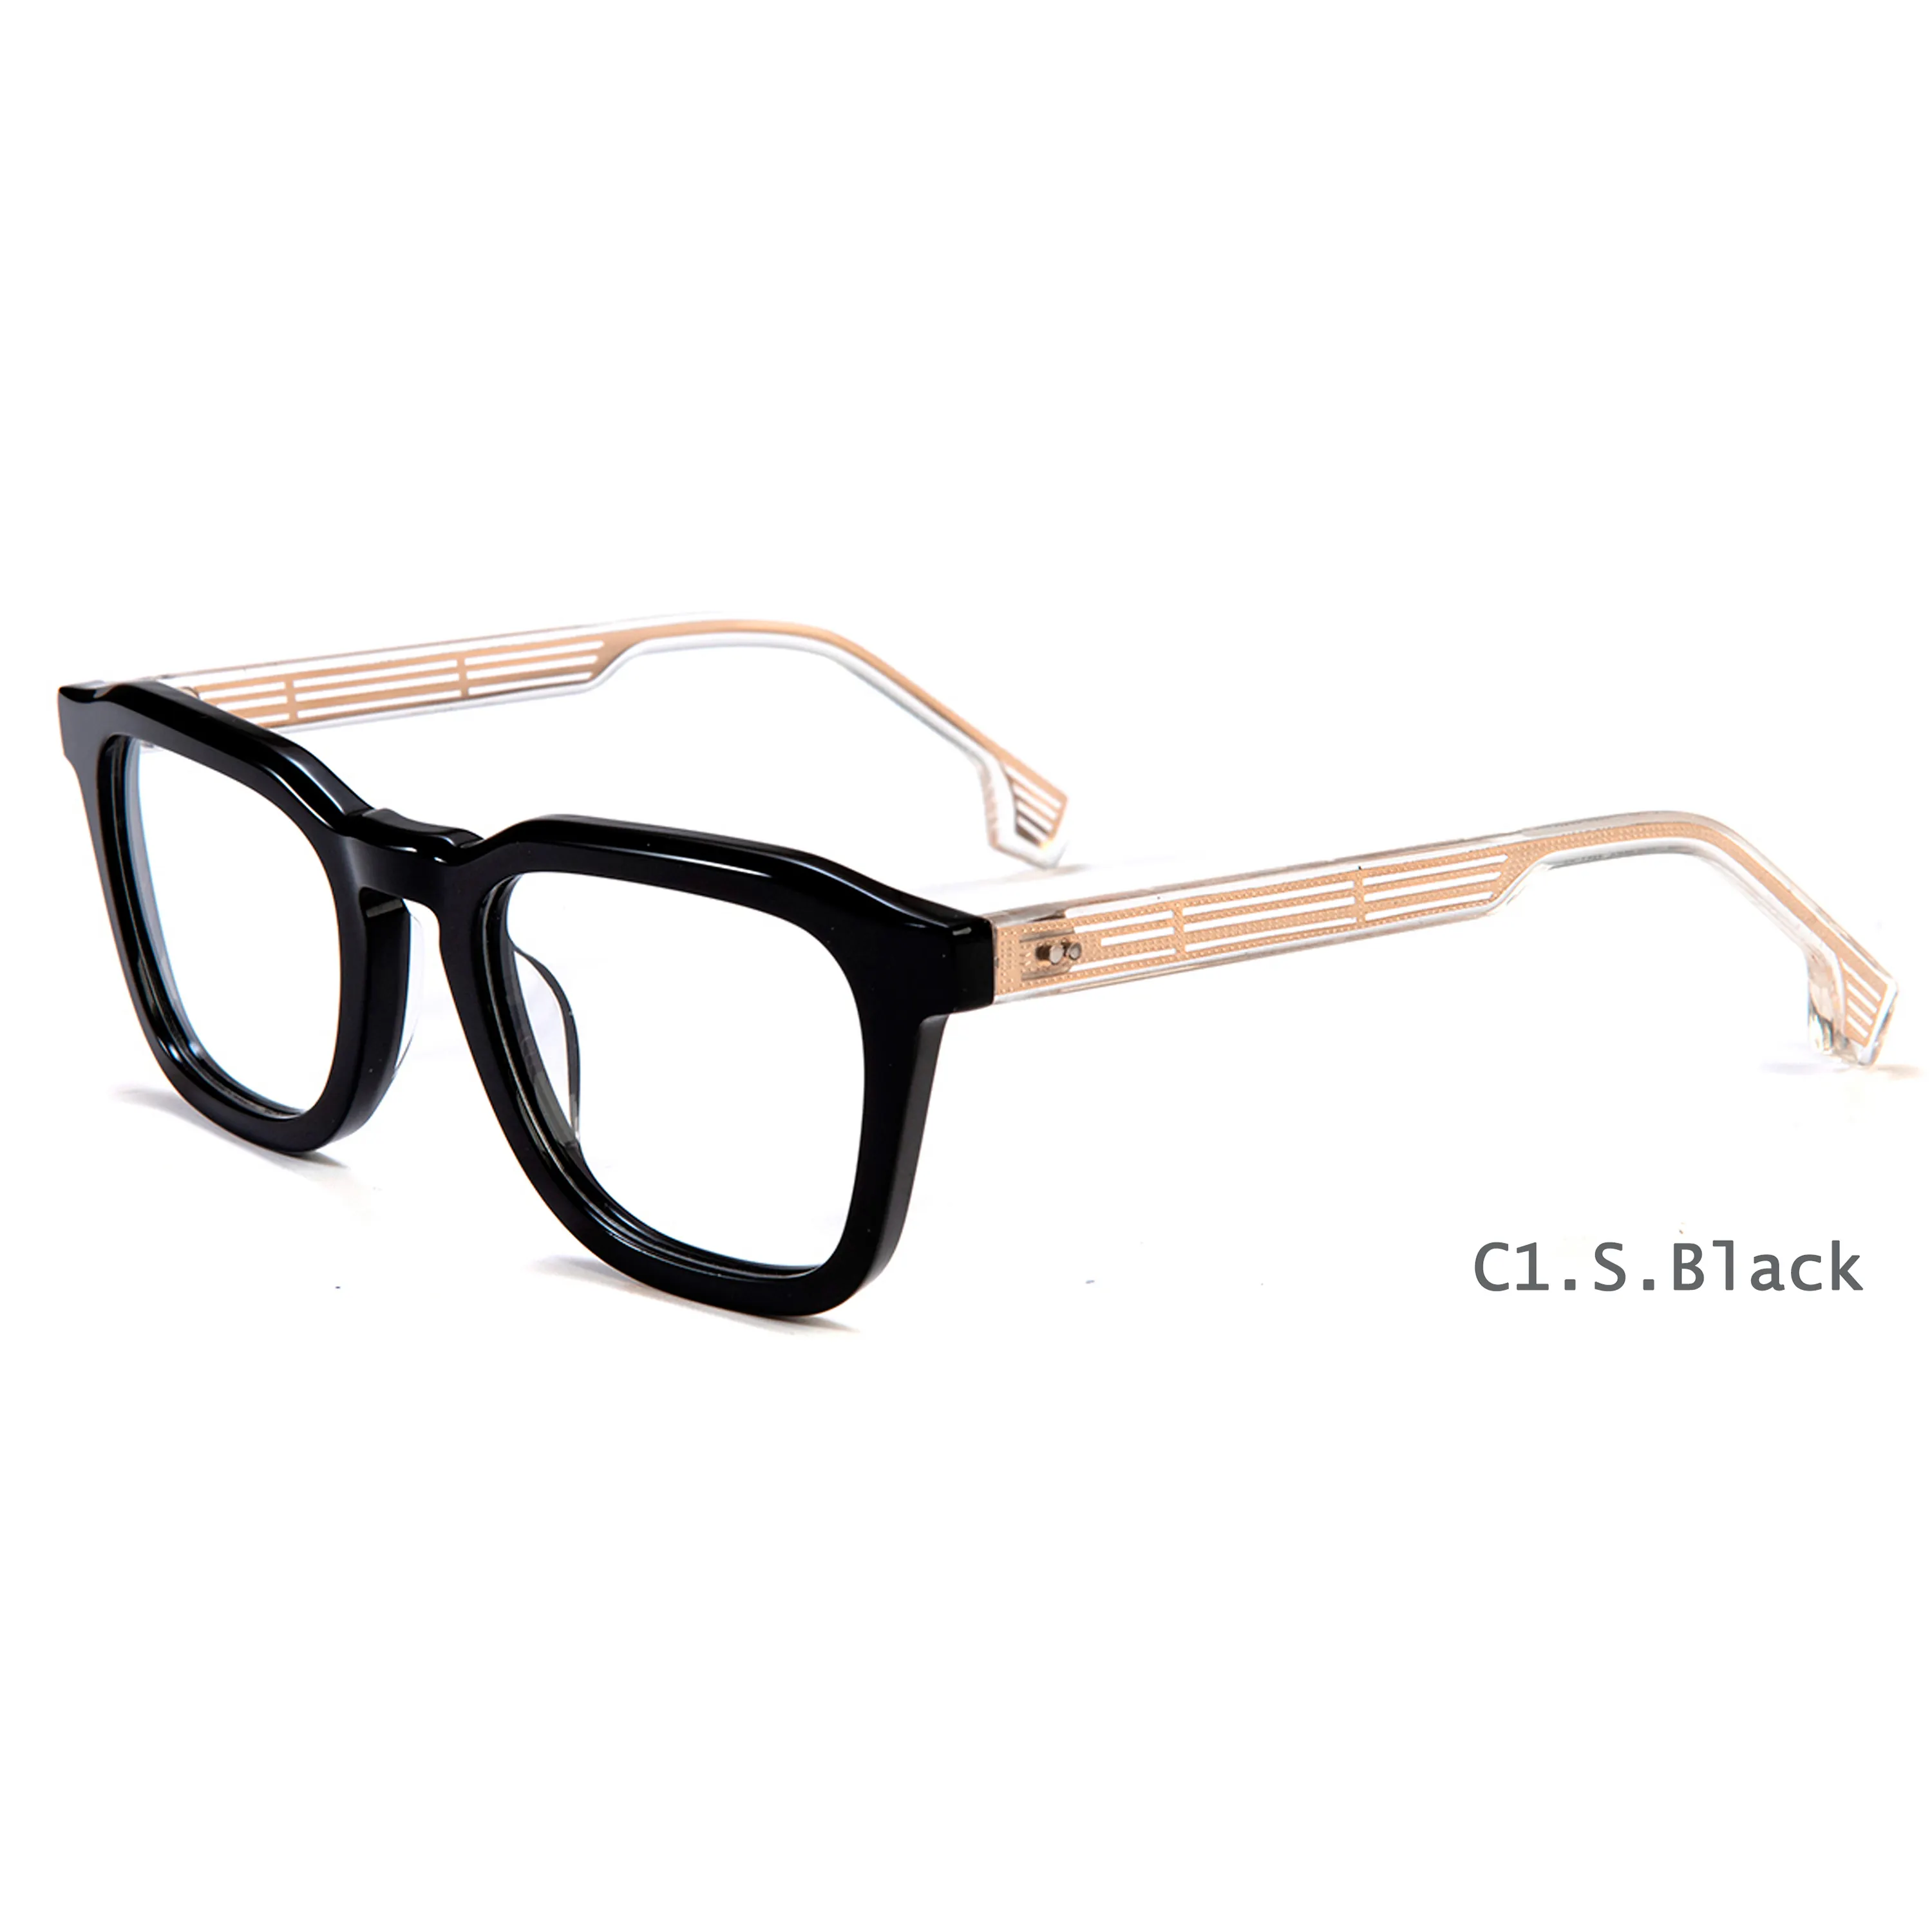 Gafas ópticas De lujo con montura De gafas, lentes ópticas, Retro, redondas, fabricantes personalizados